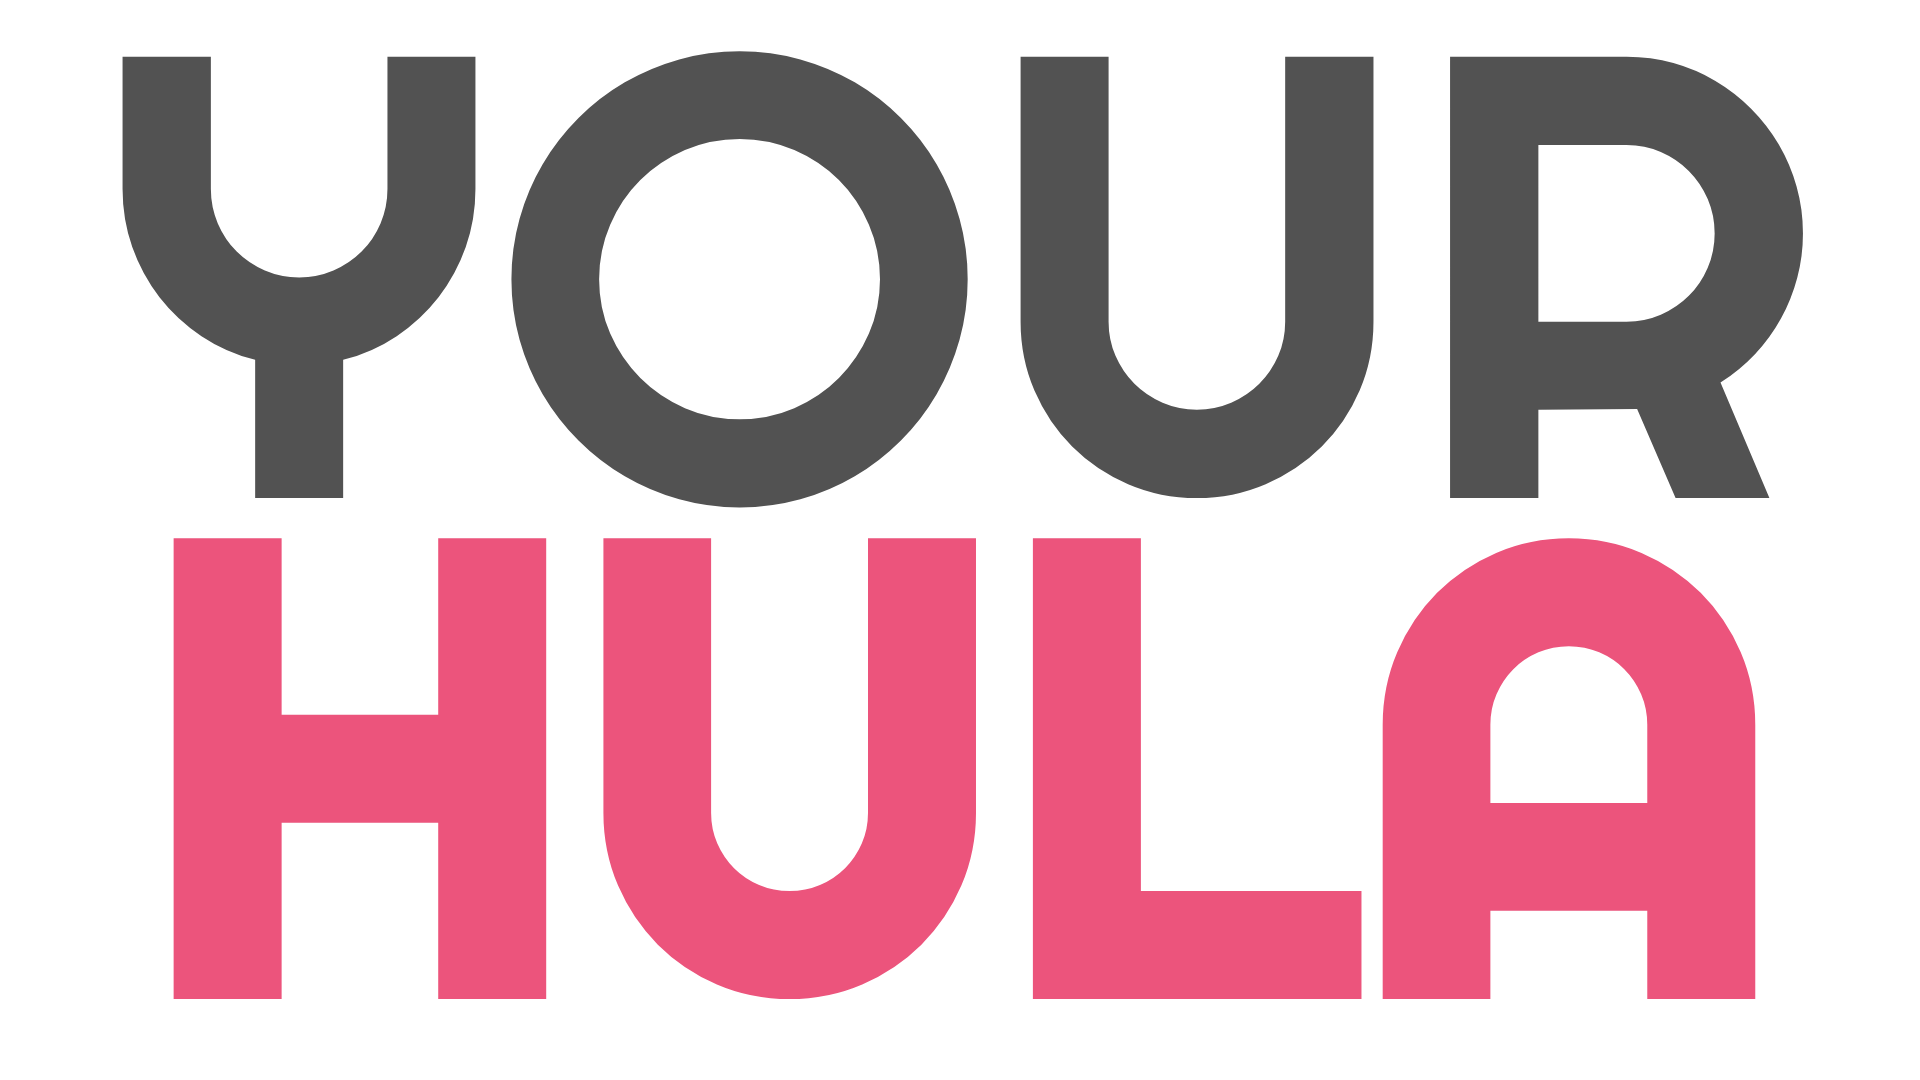 Your Hula